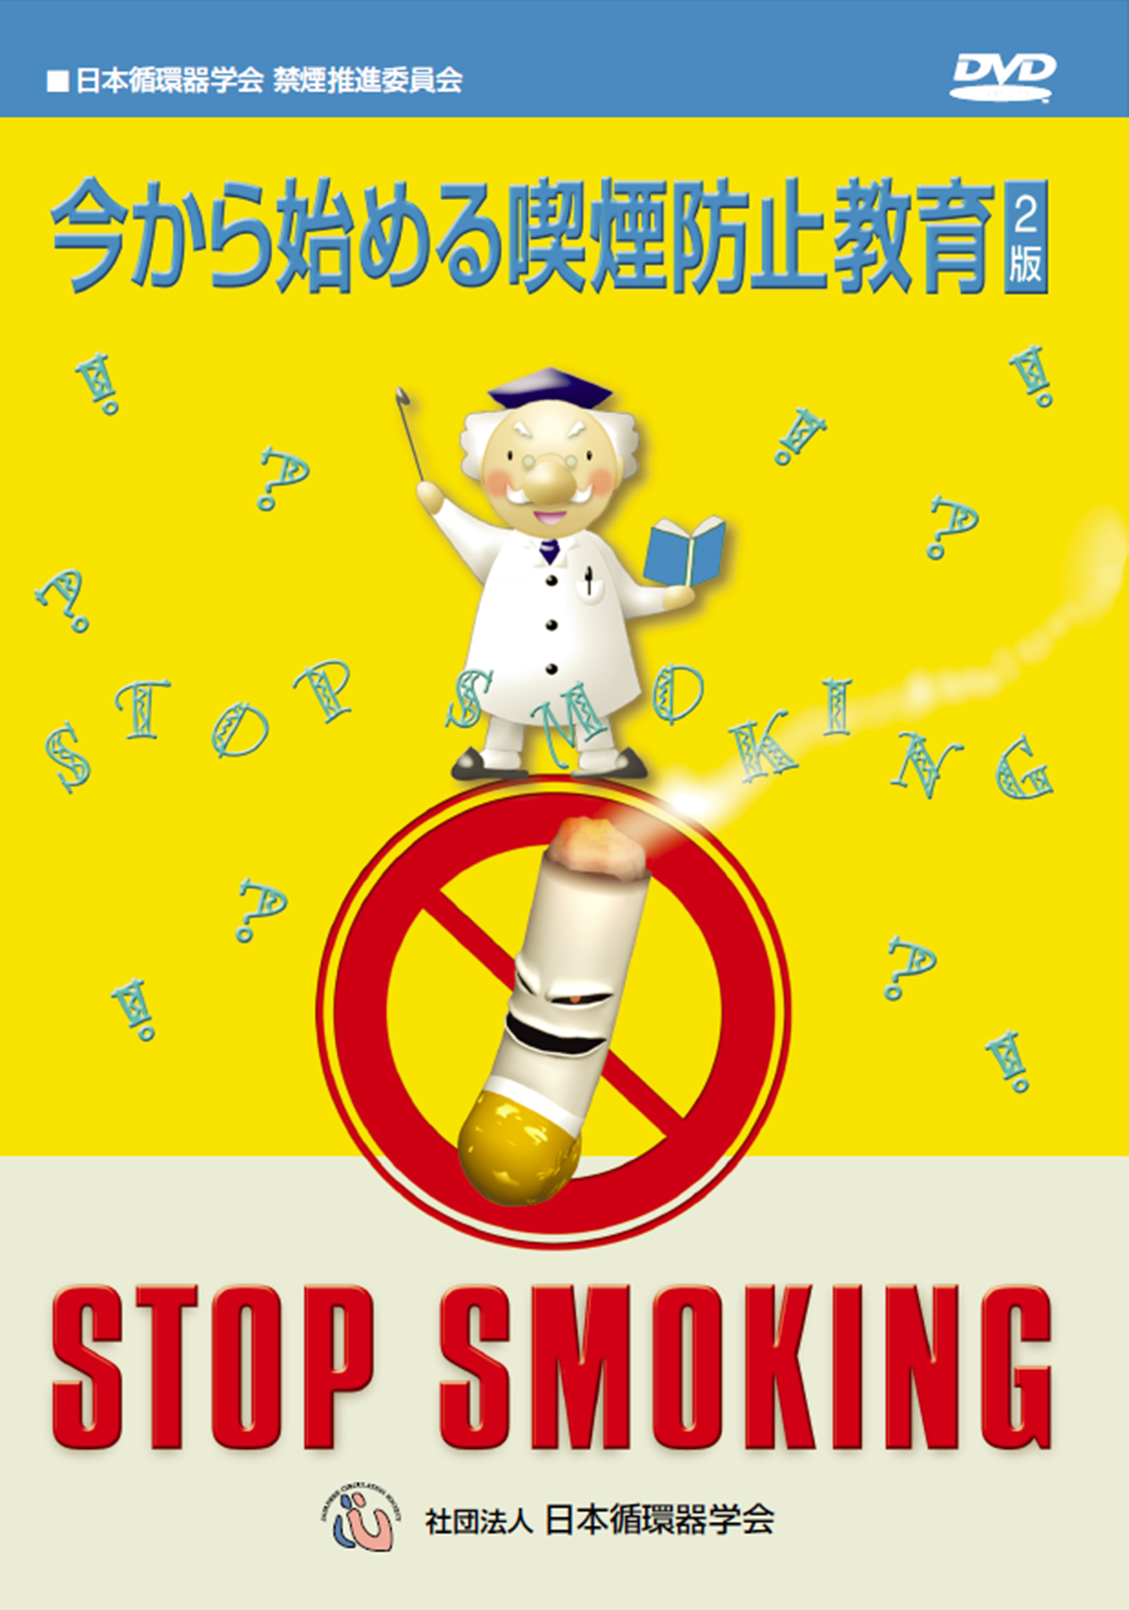 今から始める喫煙防止教育 2版のジャケット画像